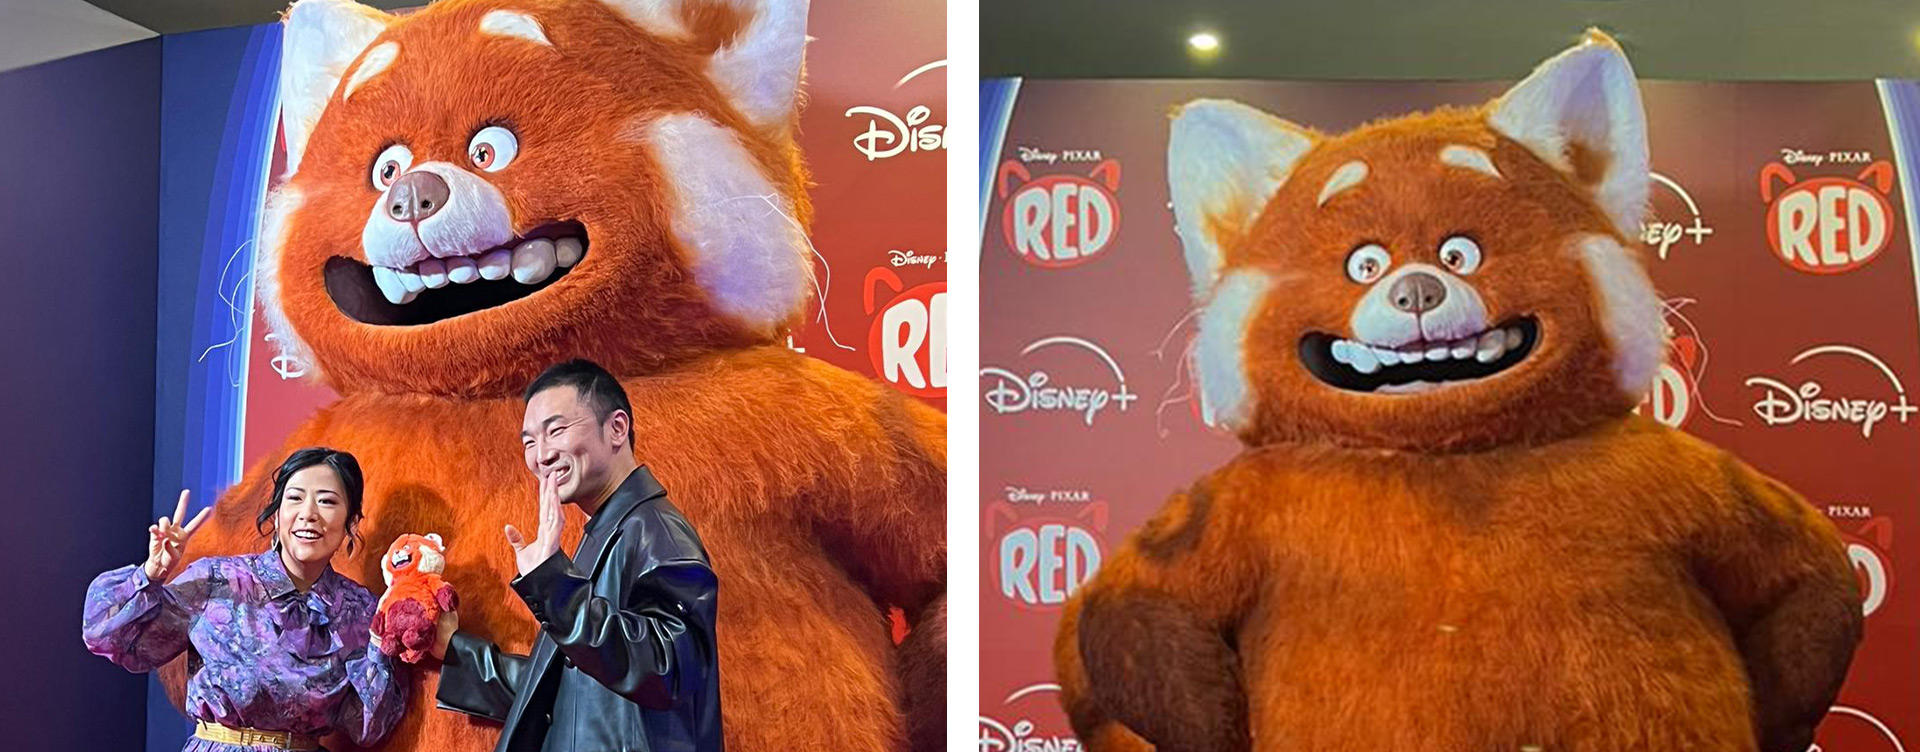 Realizzazione della statua di “Red” - Disney e Pixar